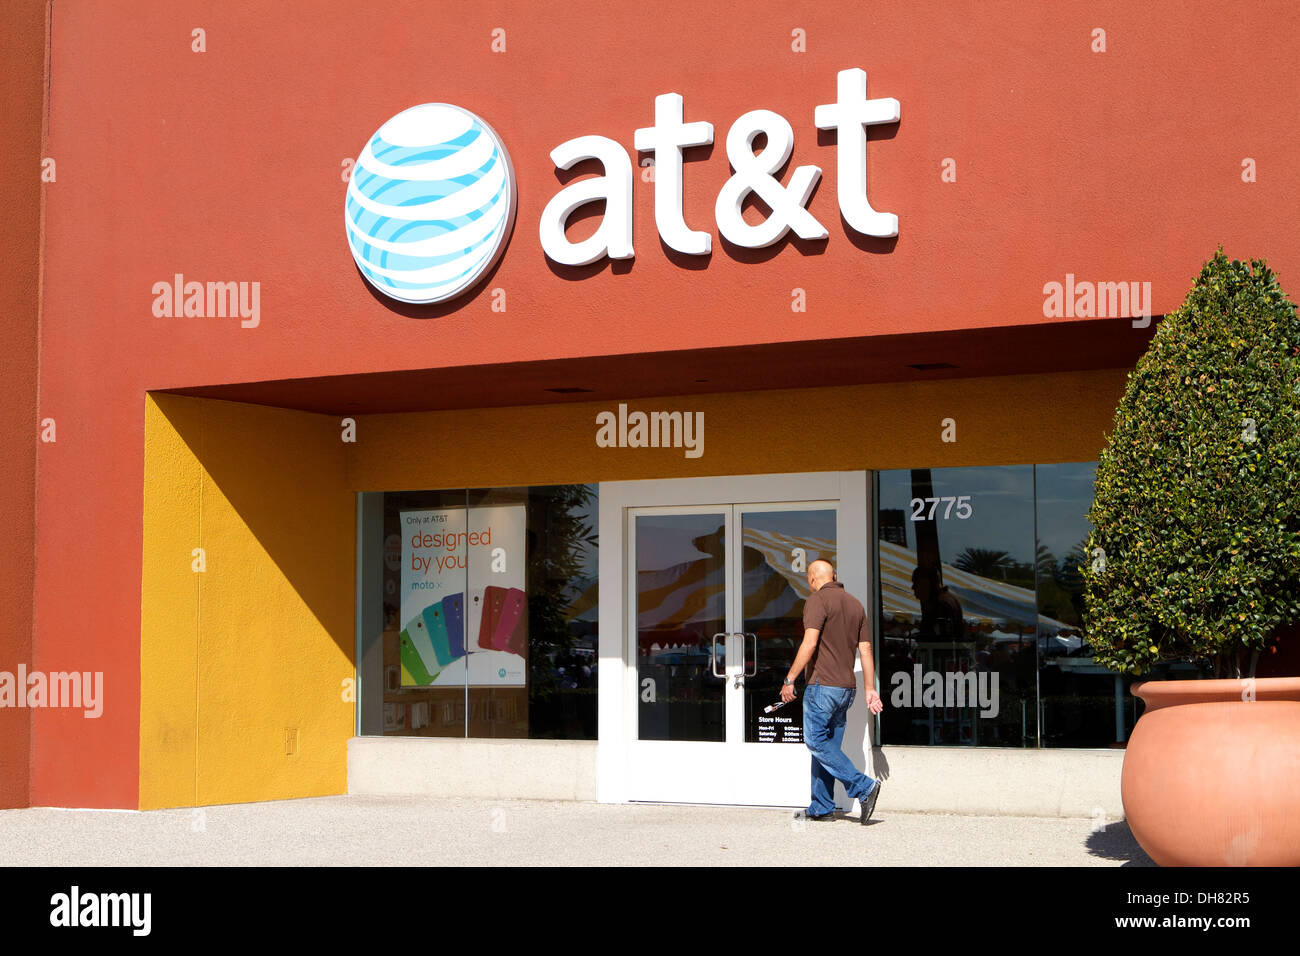 AT&T TV Telefon und Internet Provider Einzelhandel Ladenfront in Tustin  Markt platzieren, Kalifornien, USA Stockfotografie - Alamy